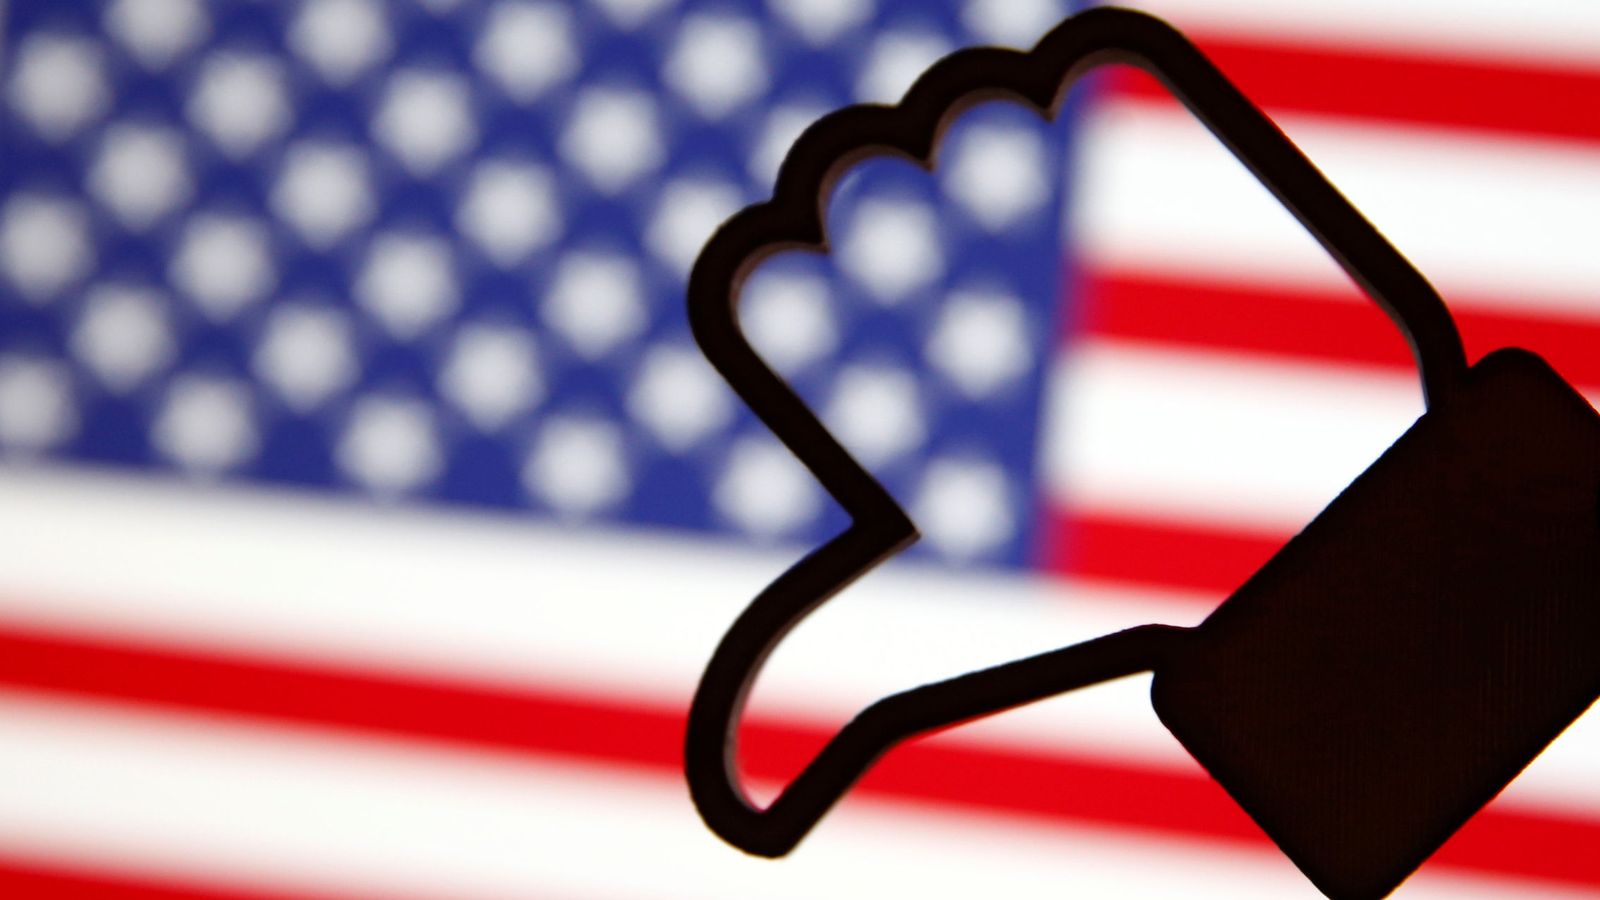 Foto: Un 'like' de Facebook impreso sobre una bandera estadounidense (Dado Ruvic / Reuters)